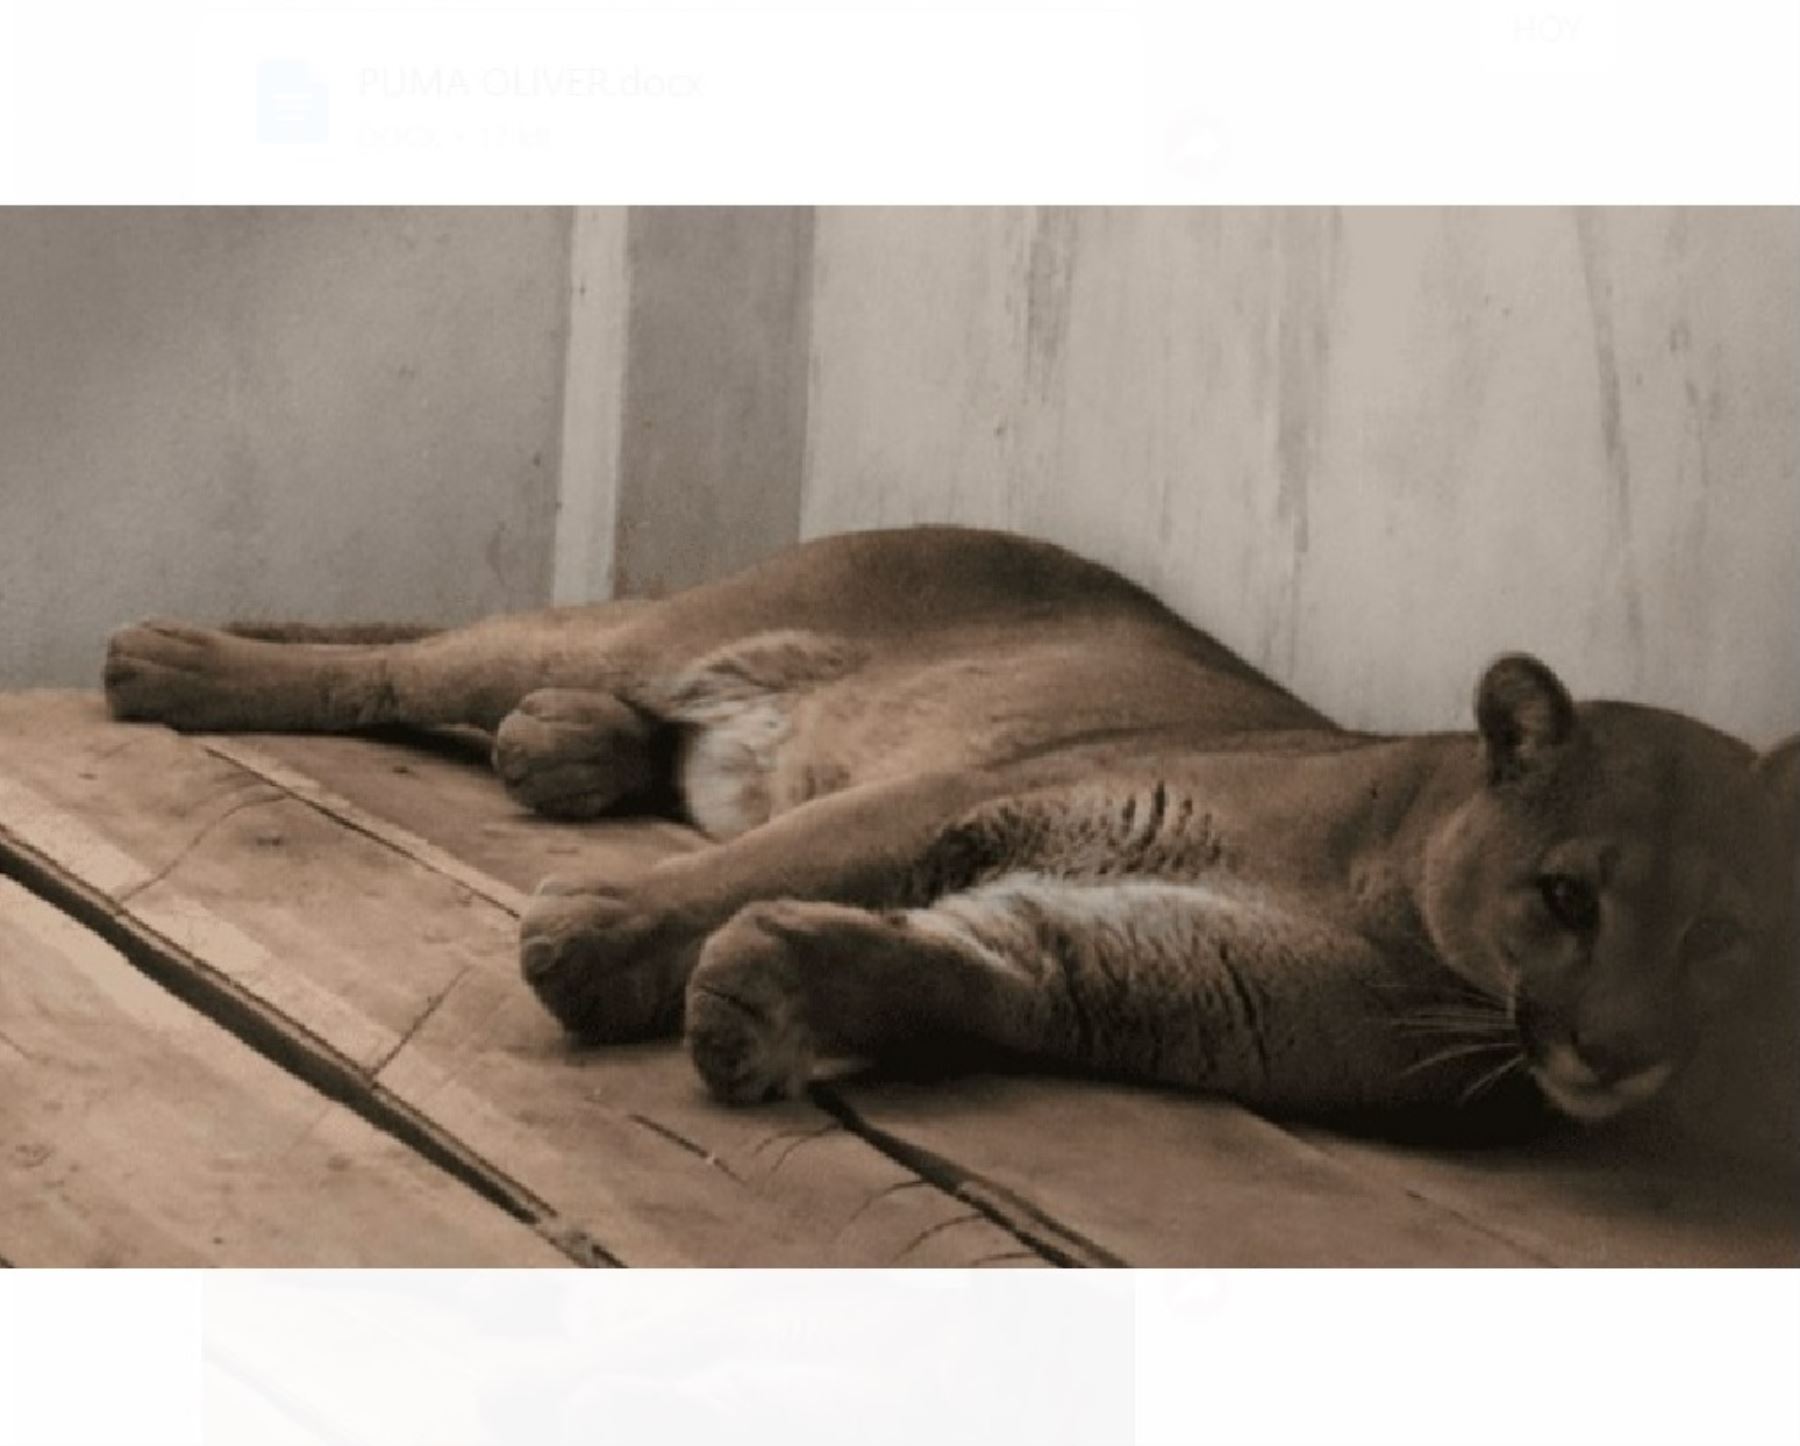 Puma andino hallado en Tacna será liberado en área de conservación regional de Vilcanota